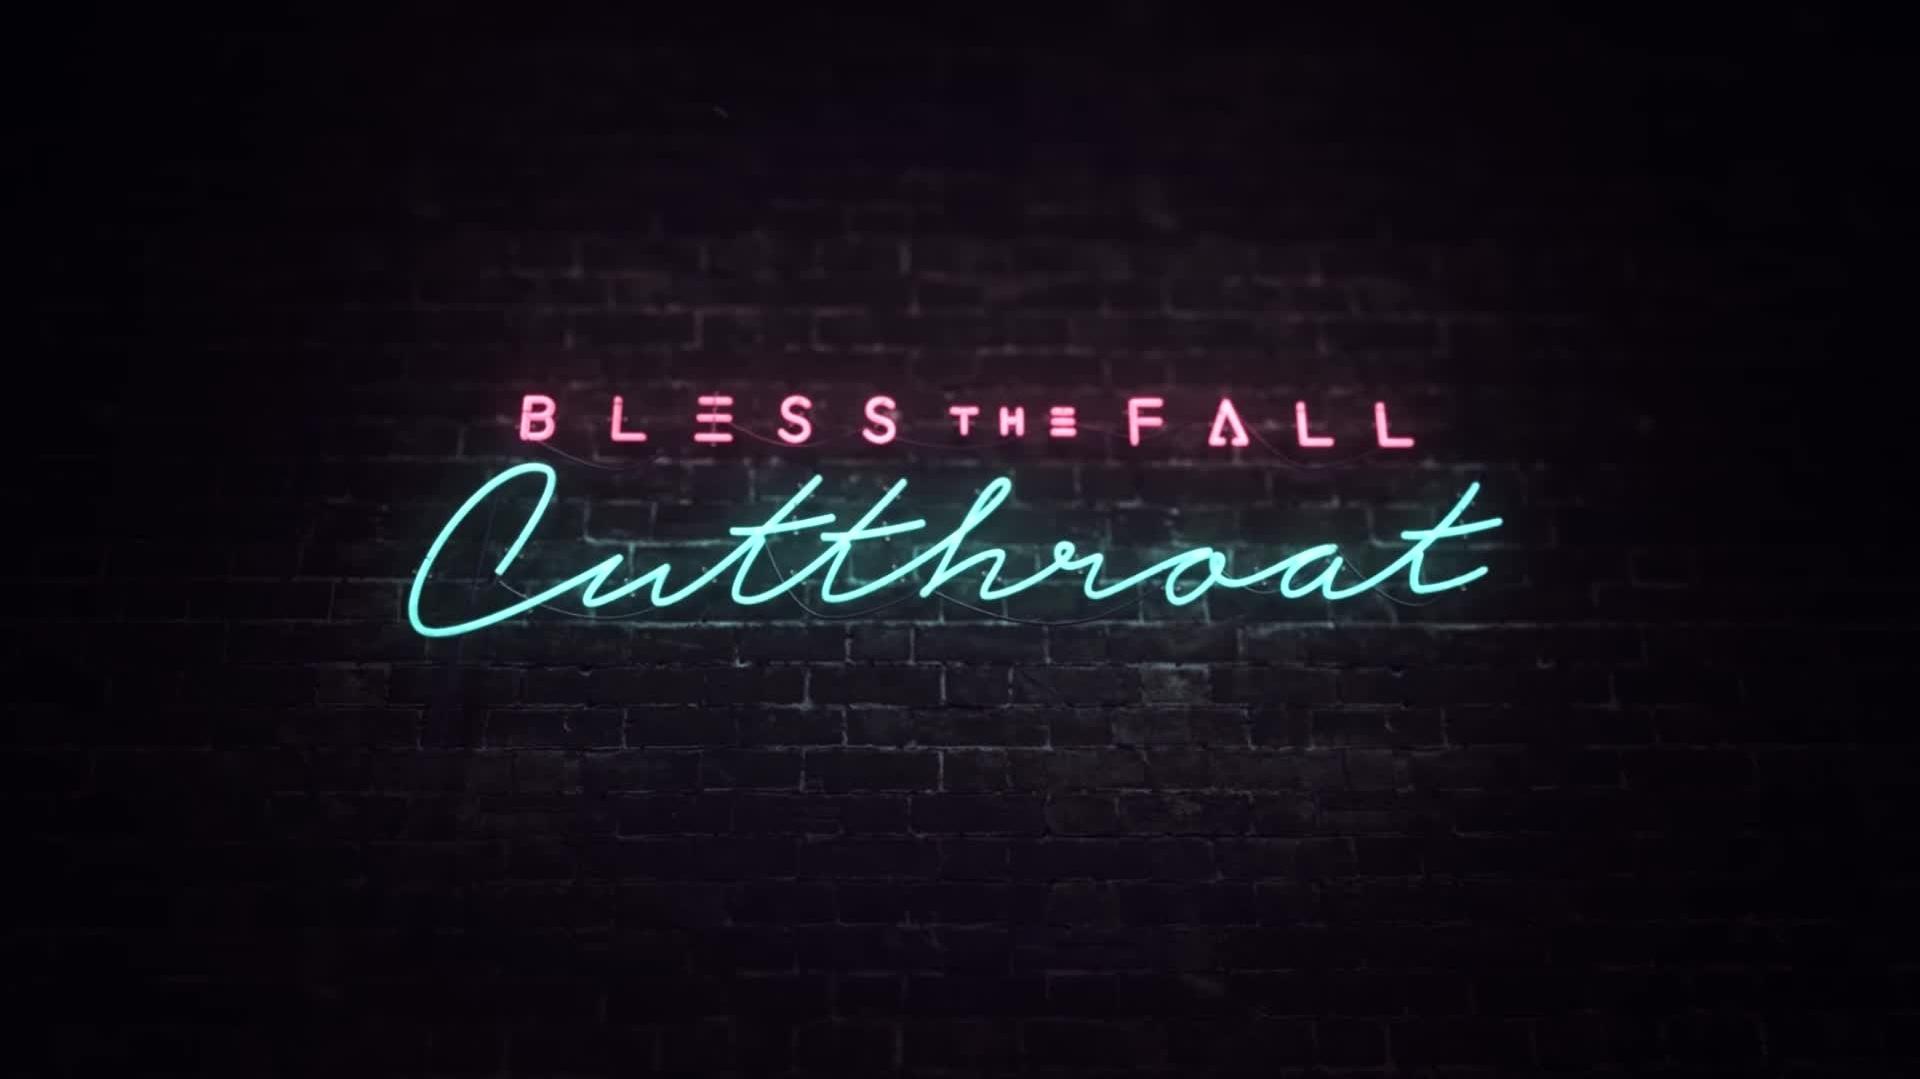 blessthefall - Cutthroat